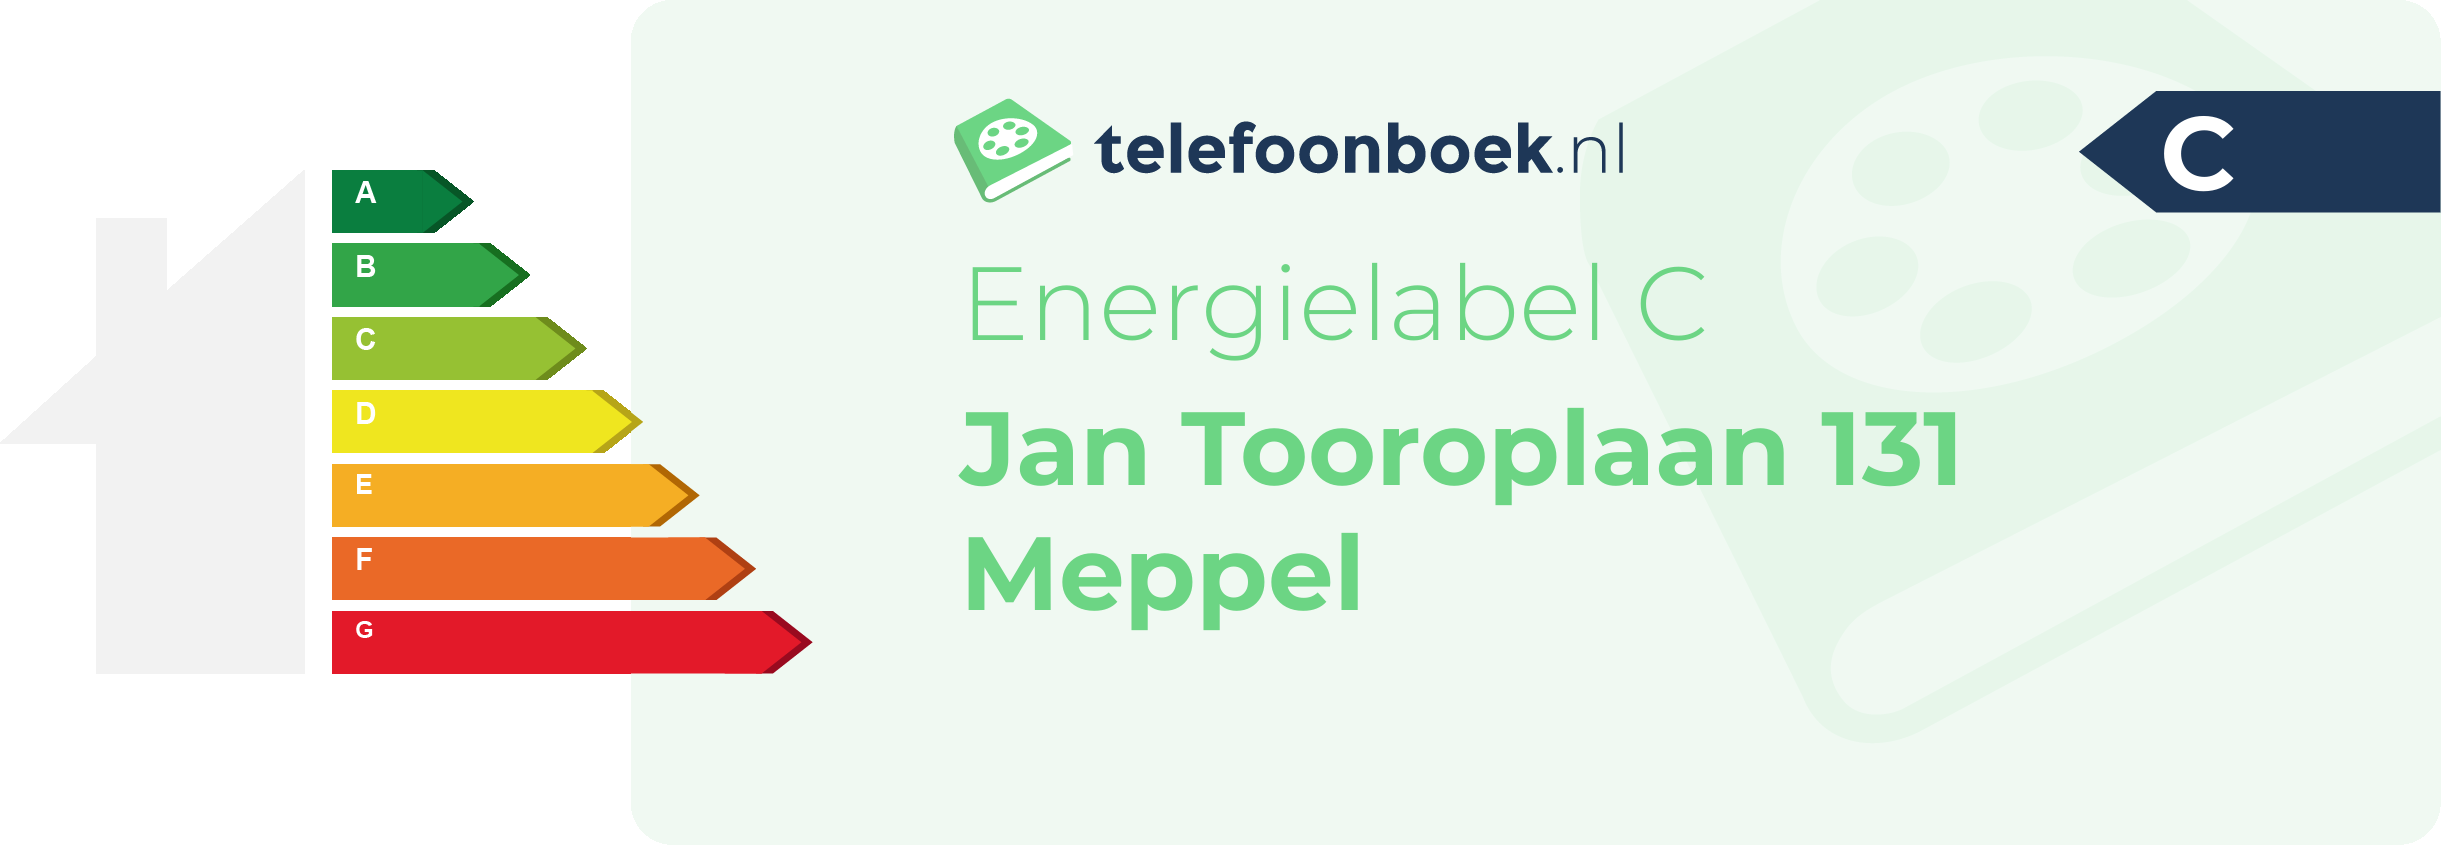 Energielabel Jan Tooroplaan 131 Meppel